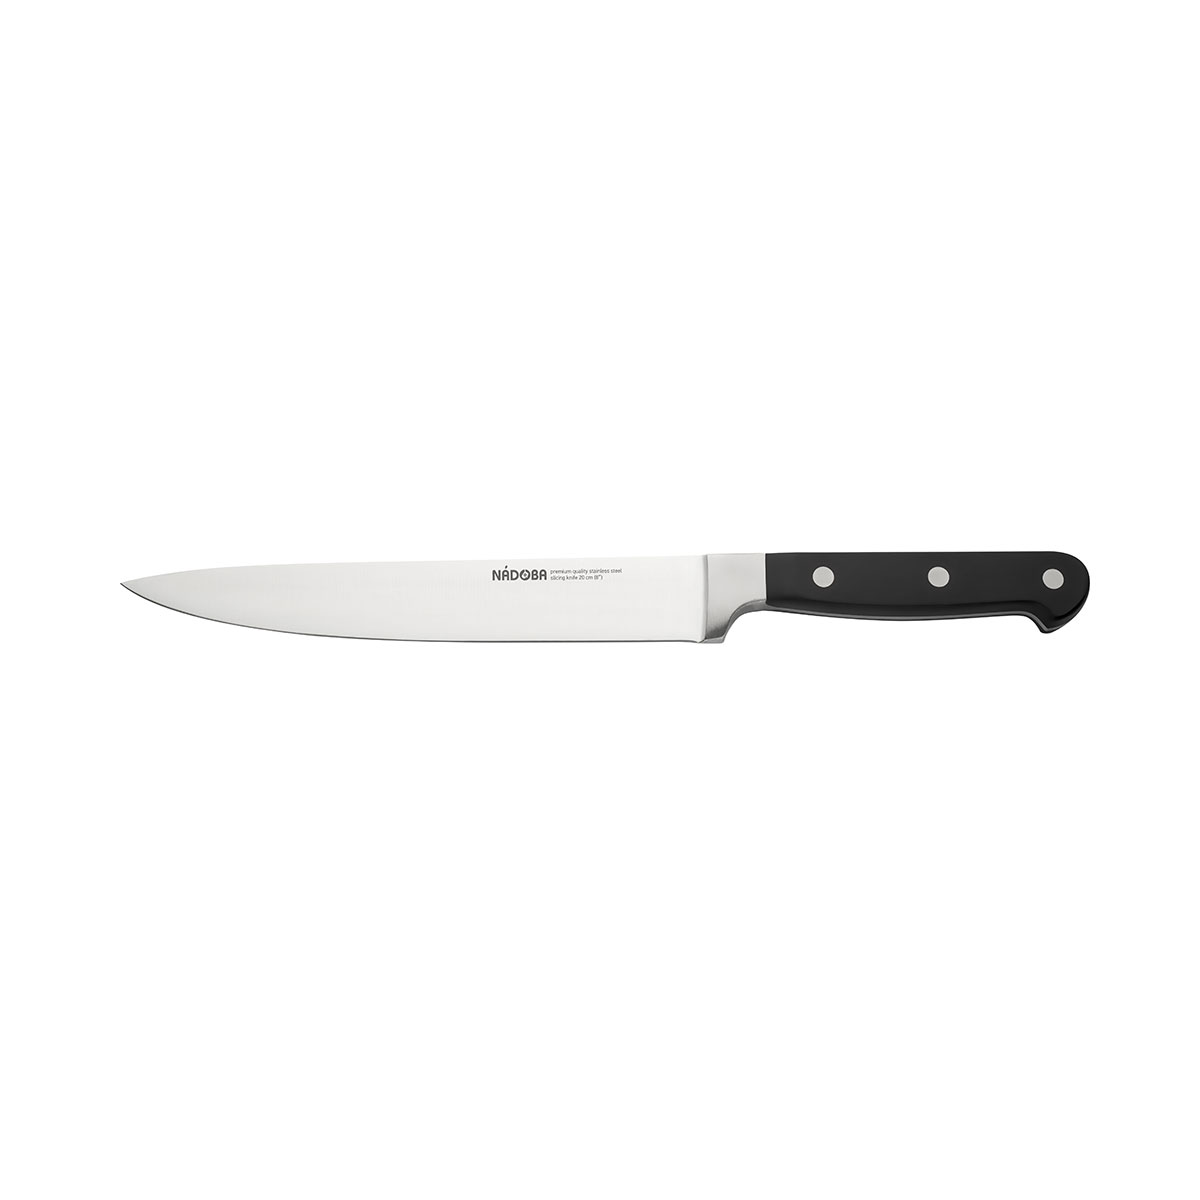 Нож Nadoba разделочный 724212, 20 см нож разделочный nadoba ursa 20 см